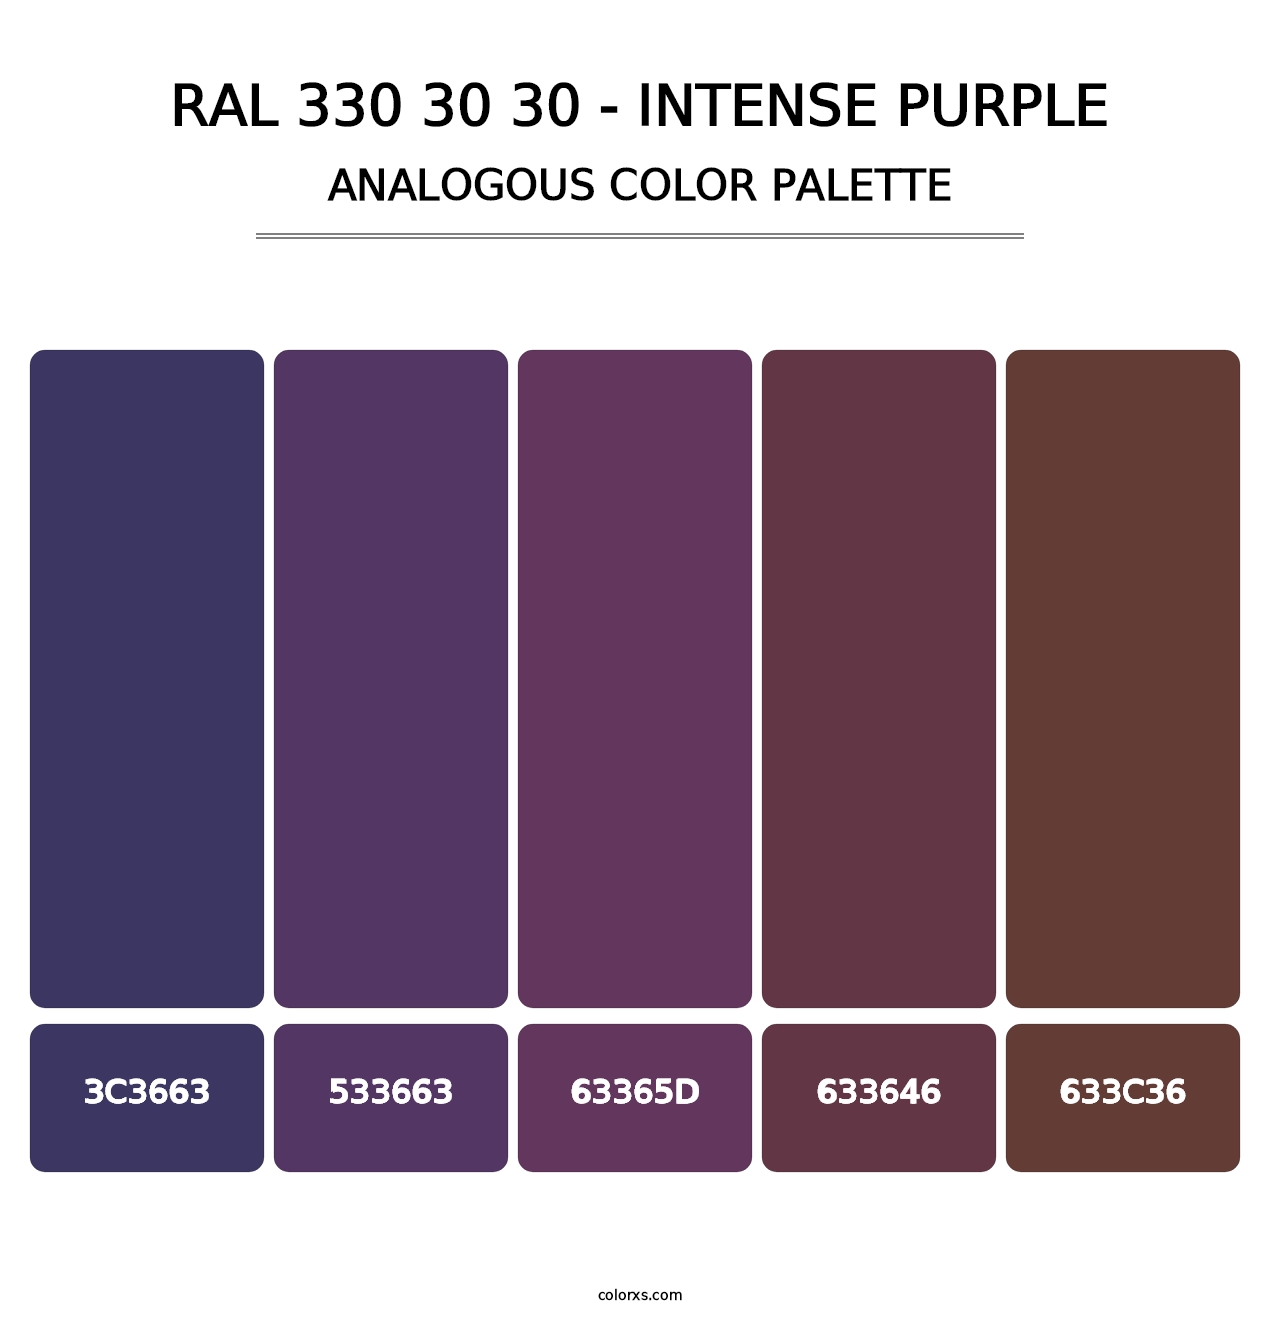 RAL 330 30 30 - Intense Purple - Analogous Color Palette